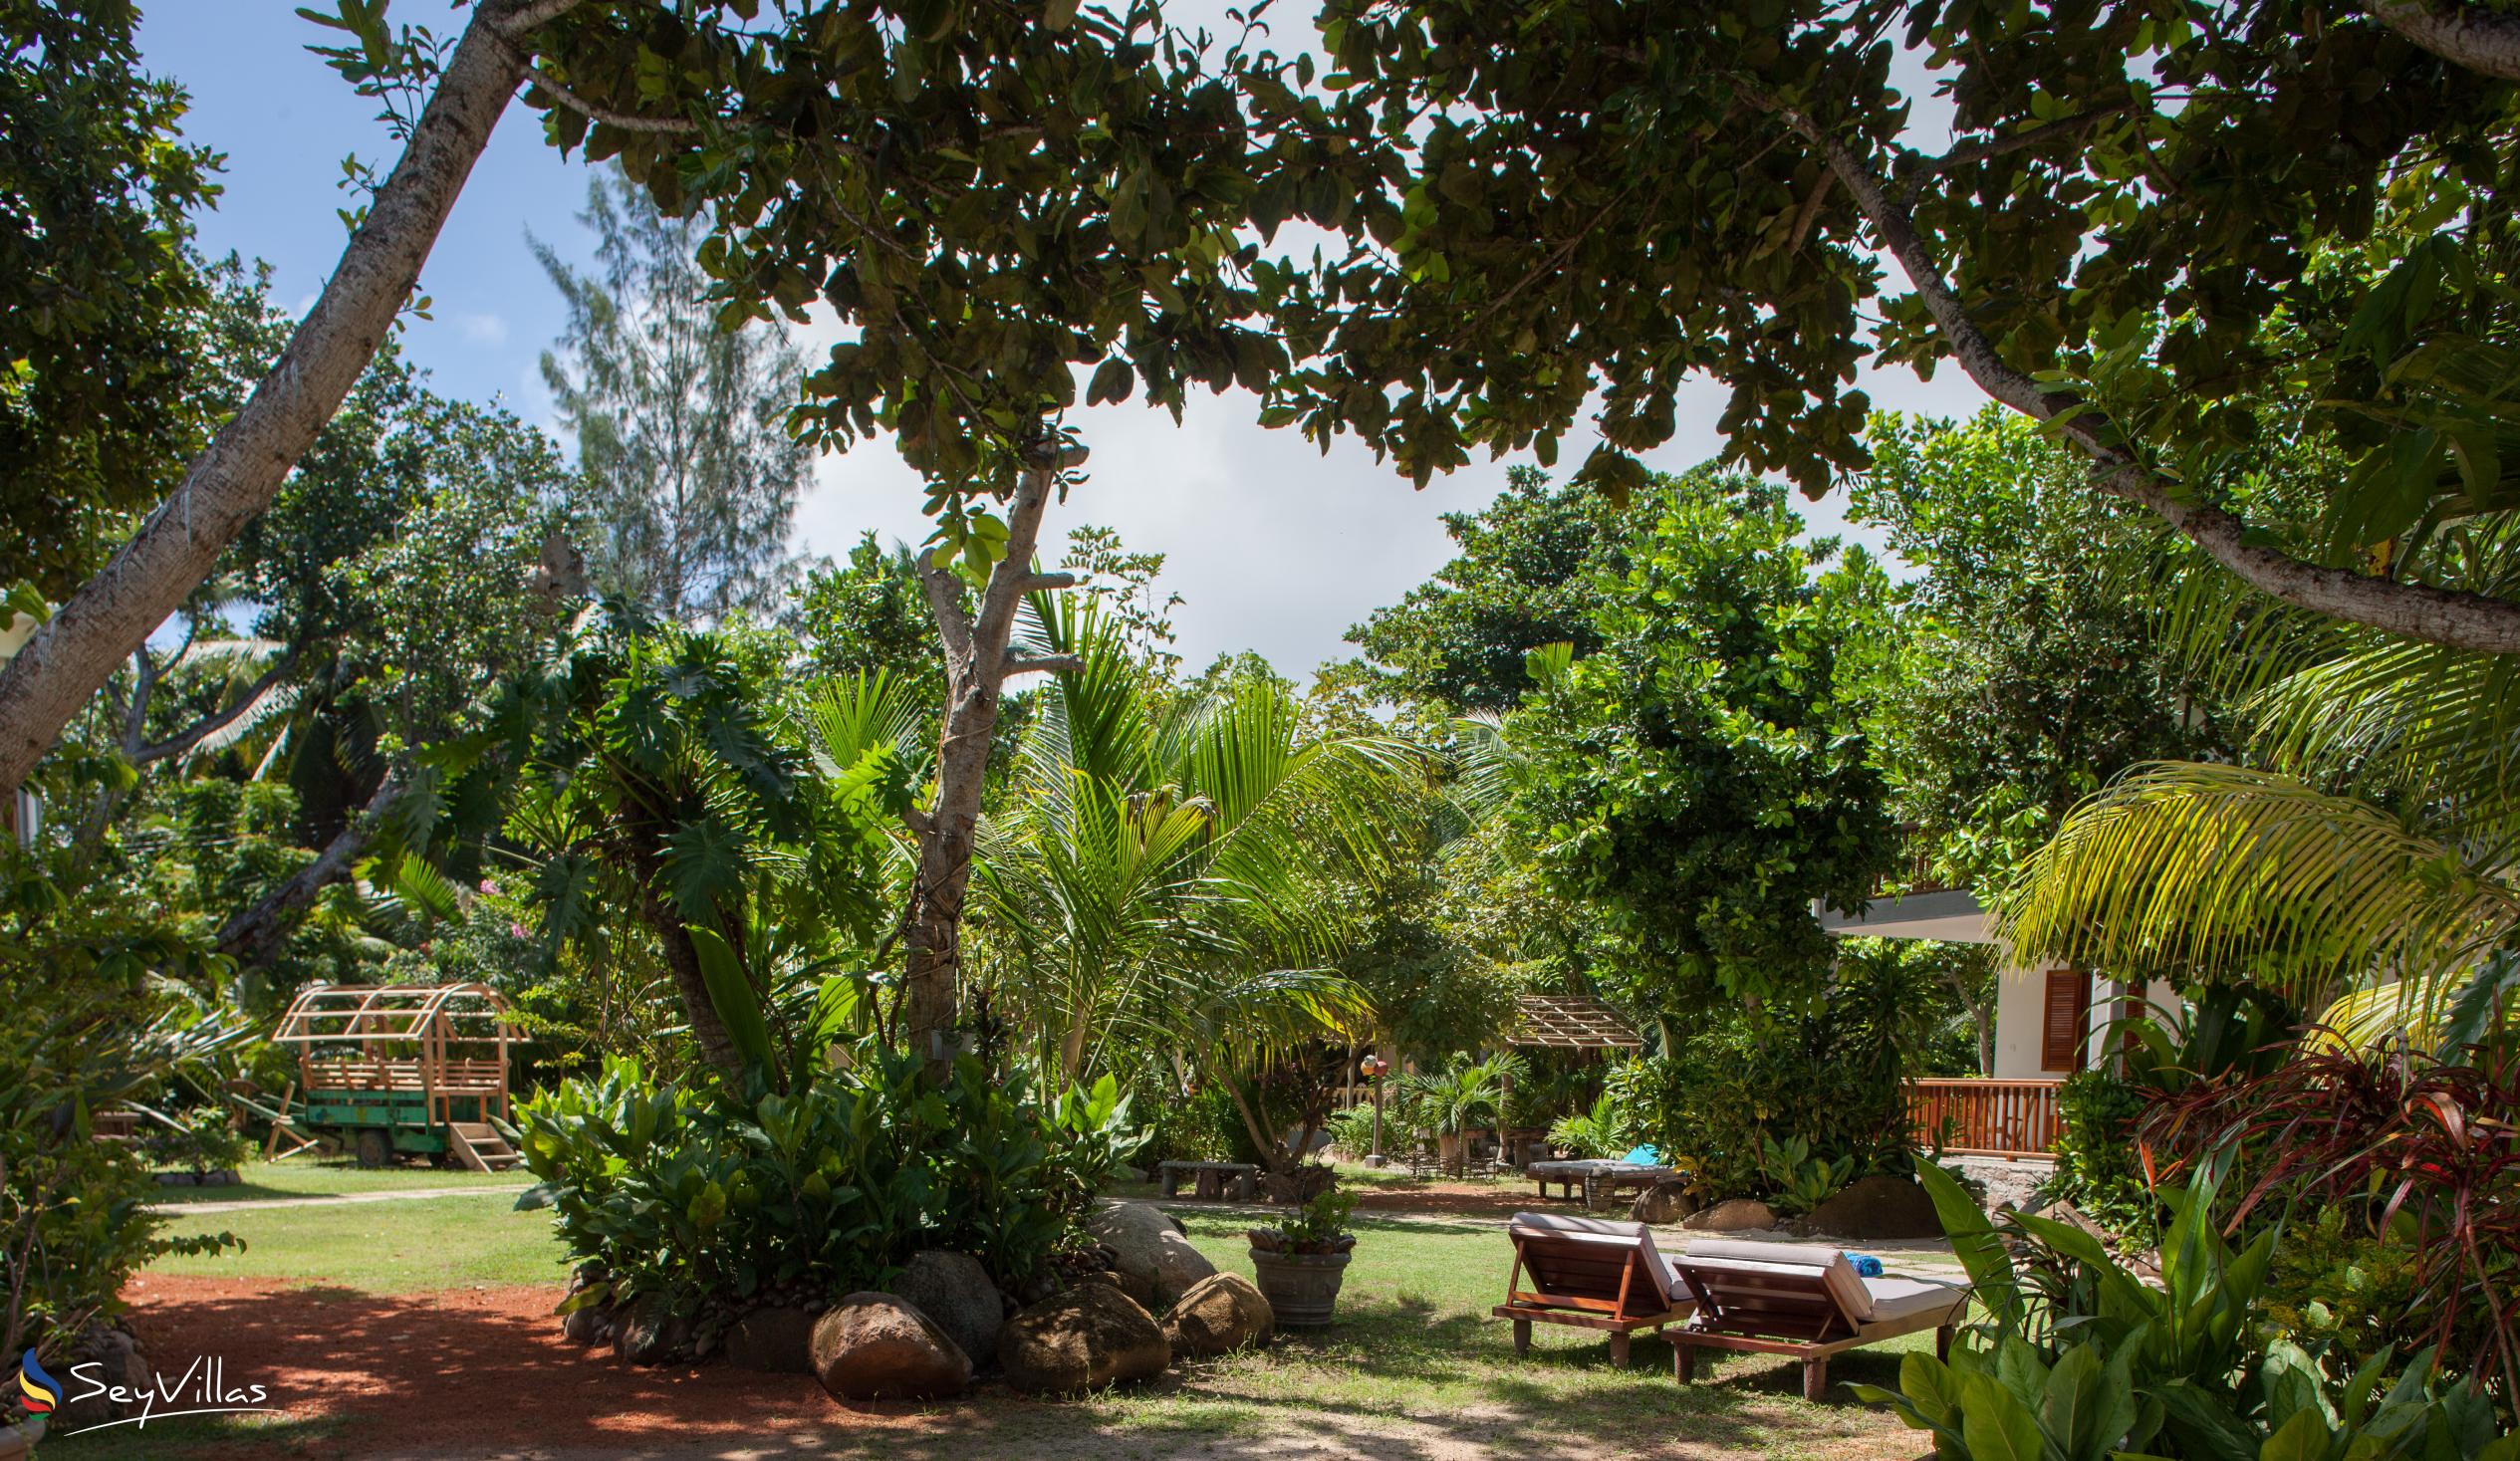 Photo 19: Domaine Les Rochers - Outdoor area - La Digue (Seychelles)